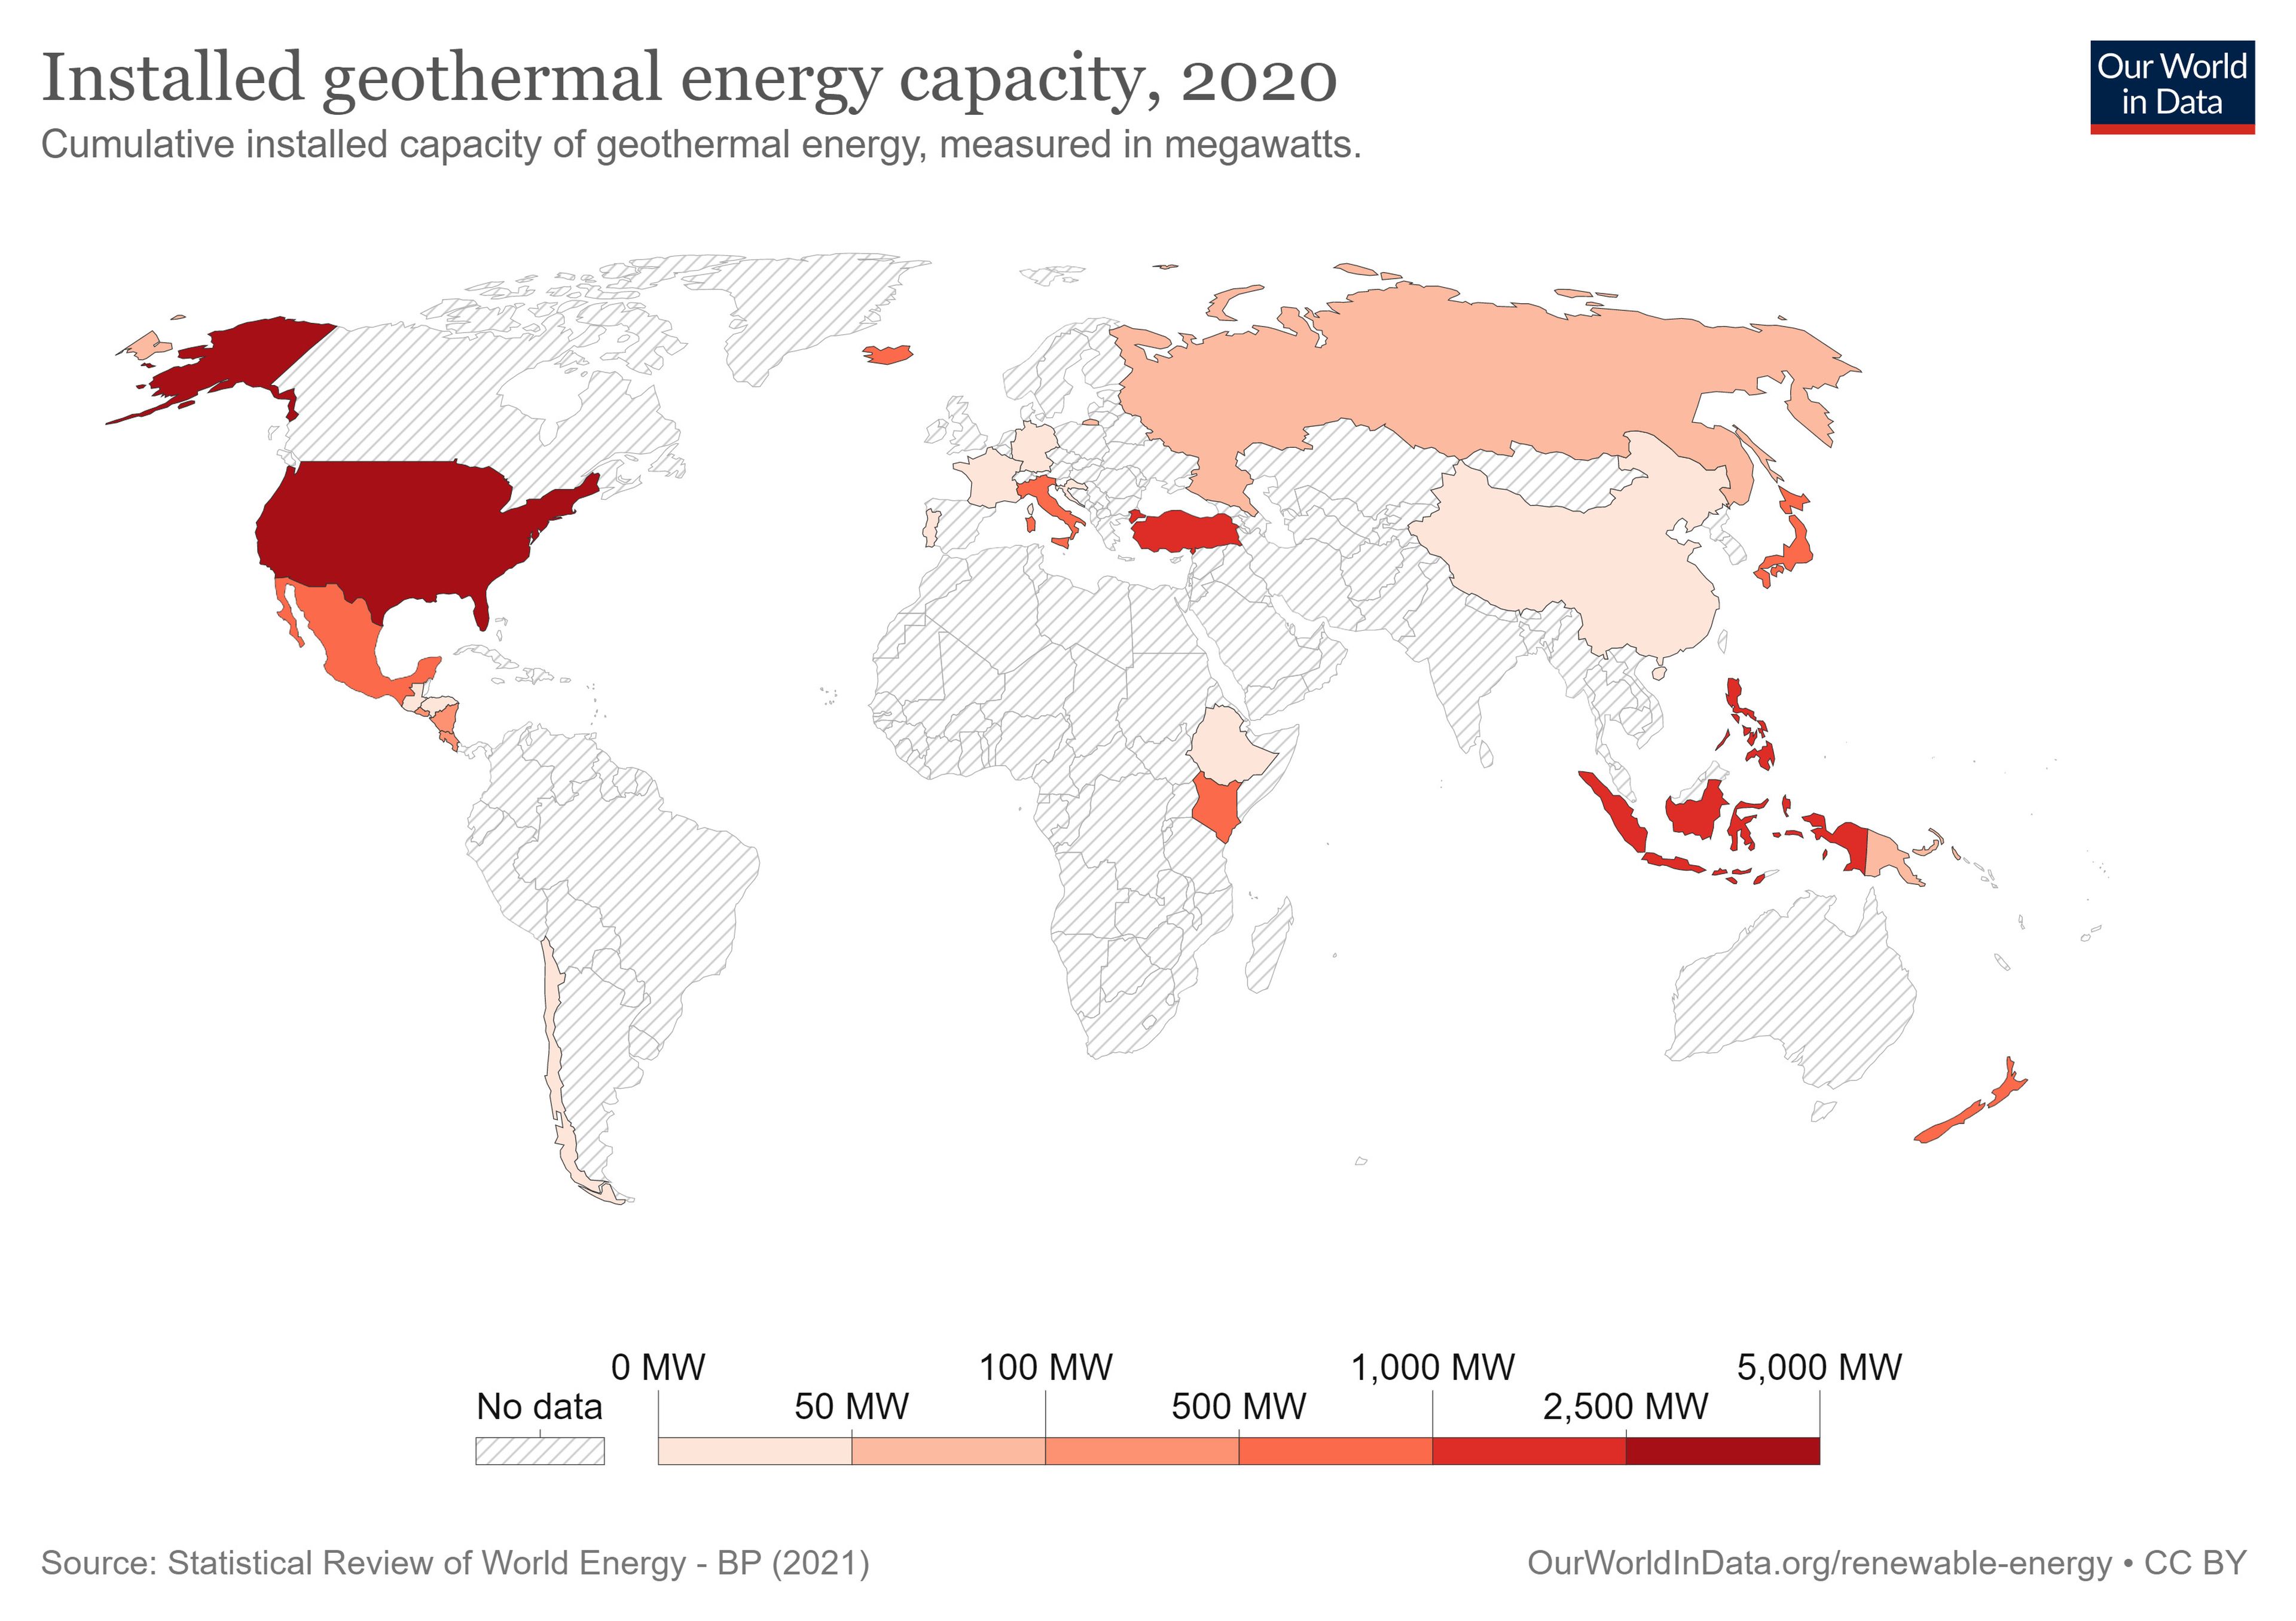 geothermal power capacity in 2020